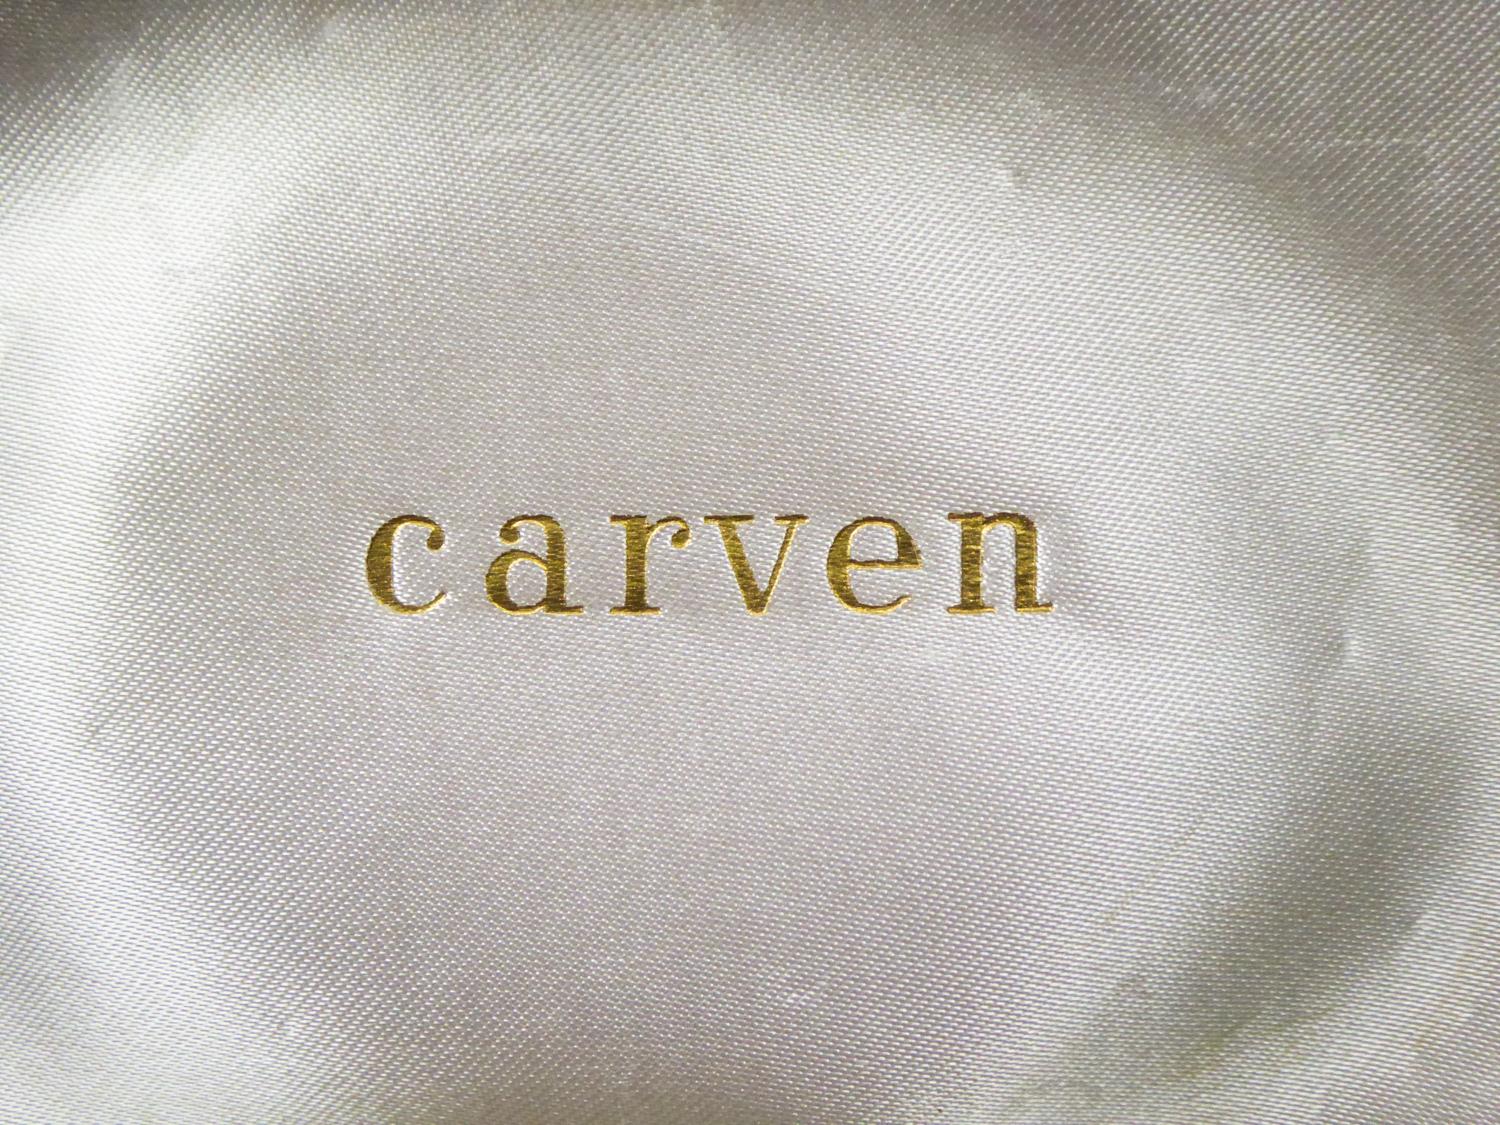 Circa 1960/1970
France Haute Couture

Collier ras du cou avec perles de verre imitant le Corail et cabochons en métal présenté dans son étui signé par la maison de couture Carven et datant de la fin des années 1960. Collier ras du cou composé de